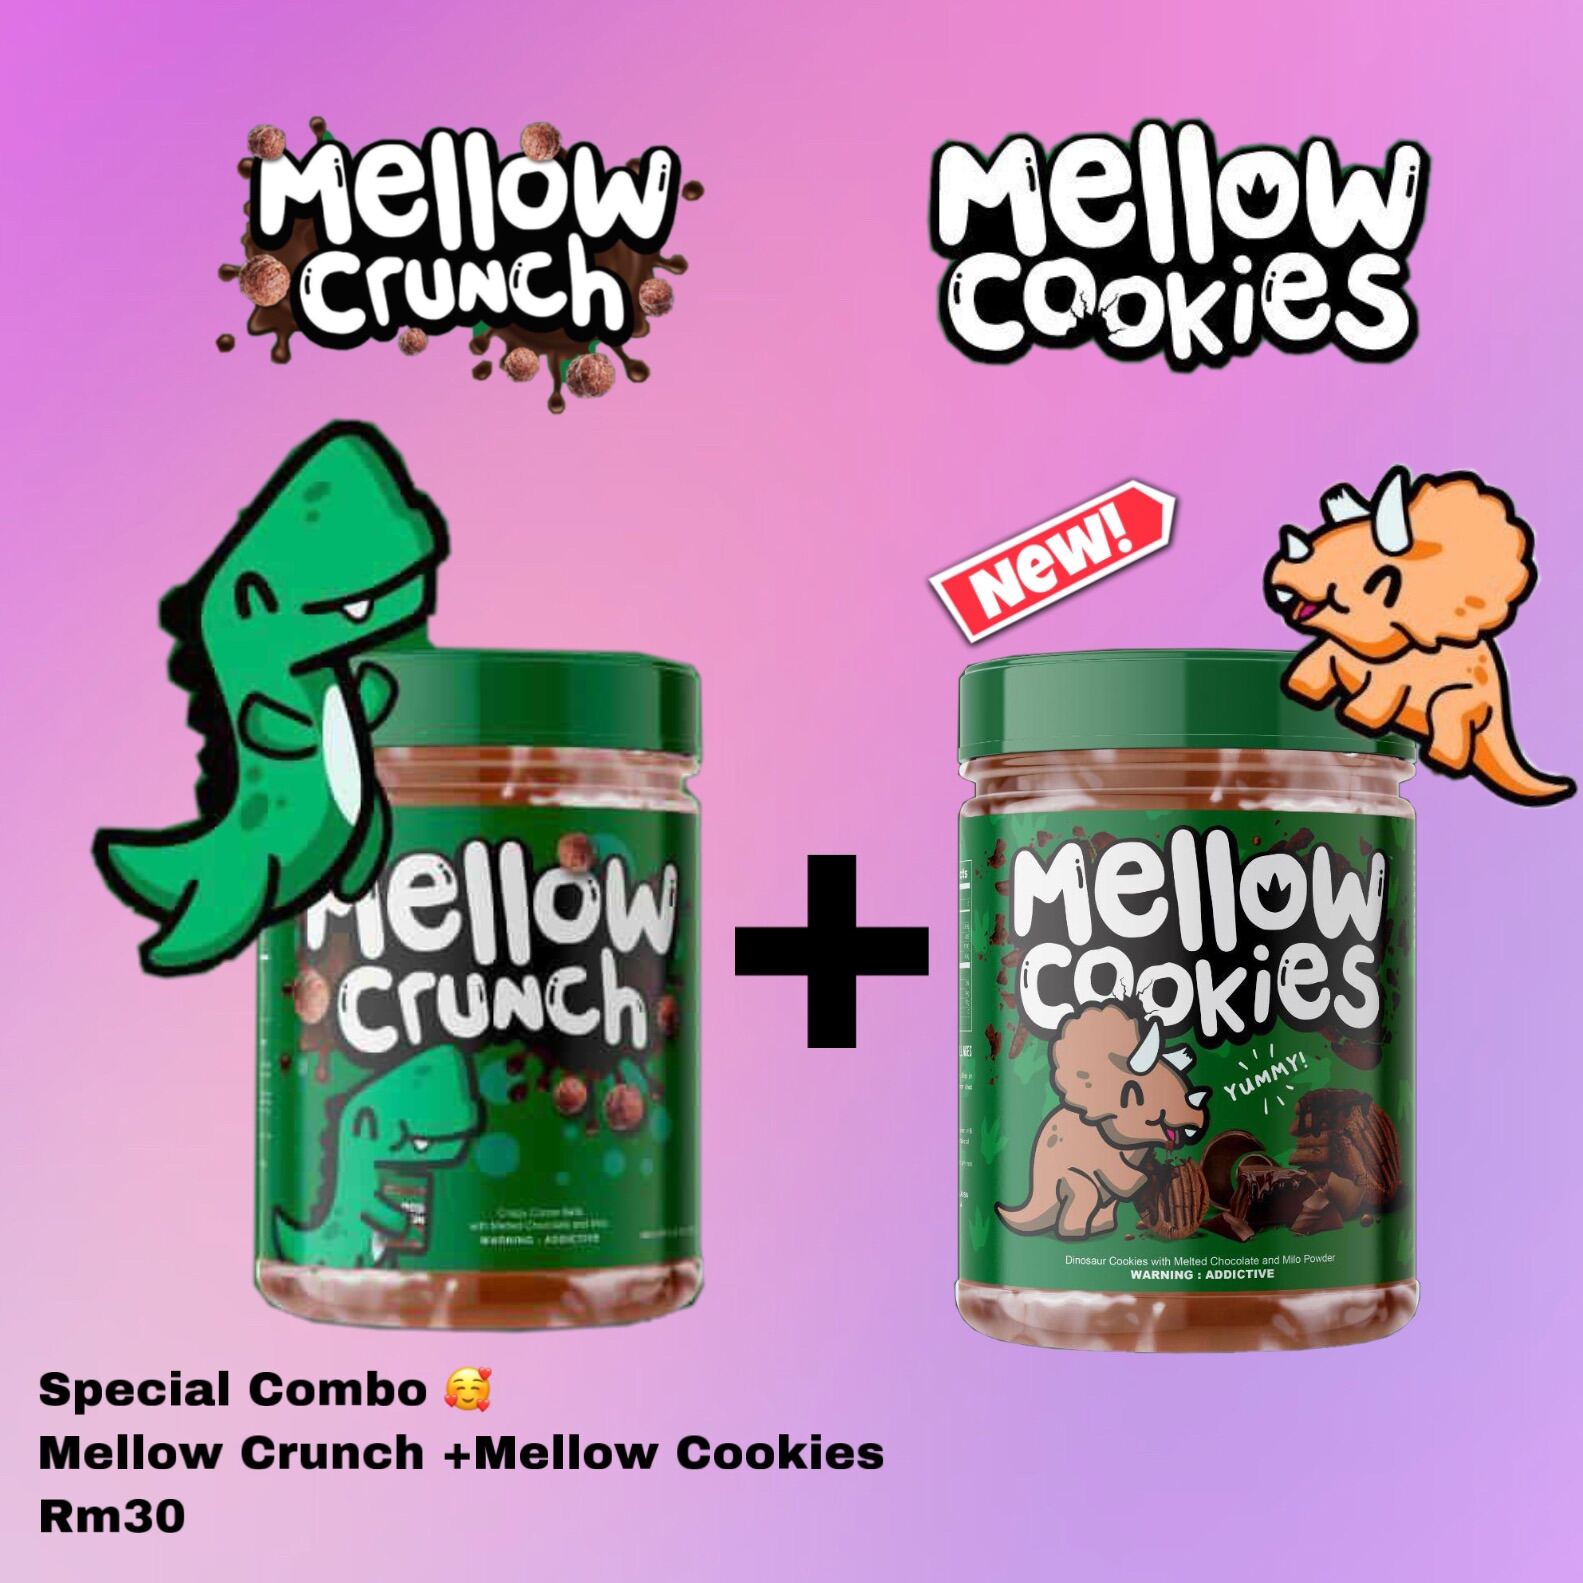 Mellow crunch